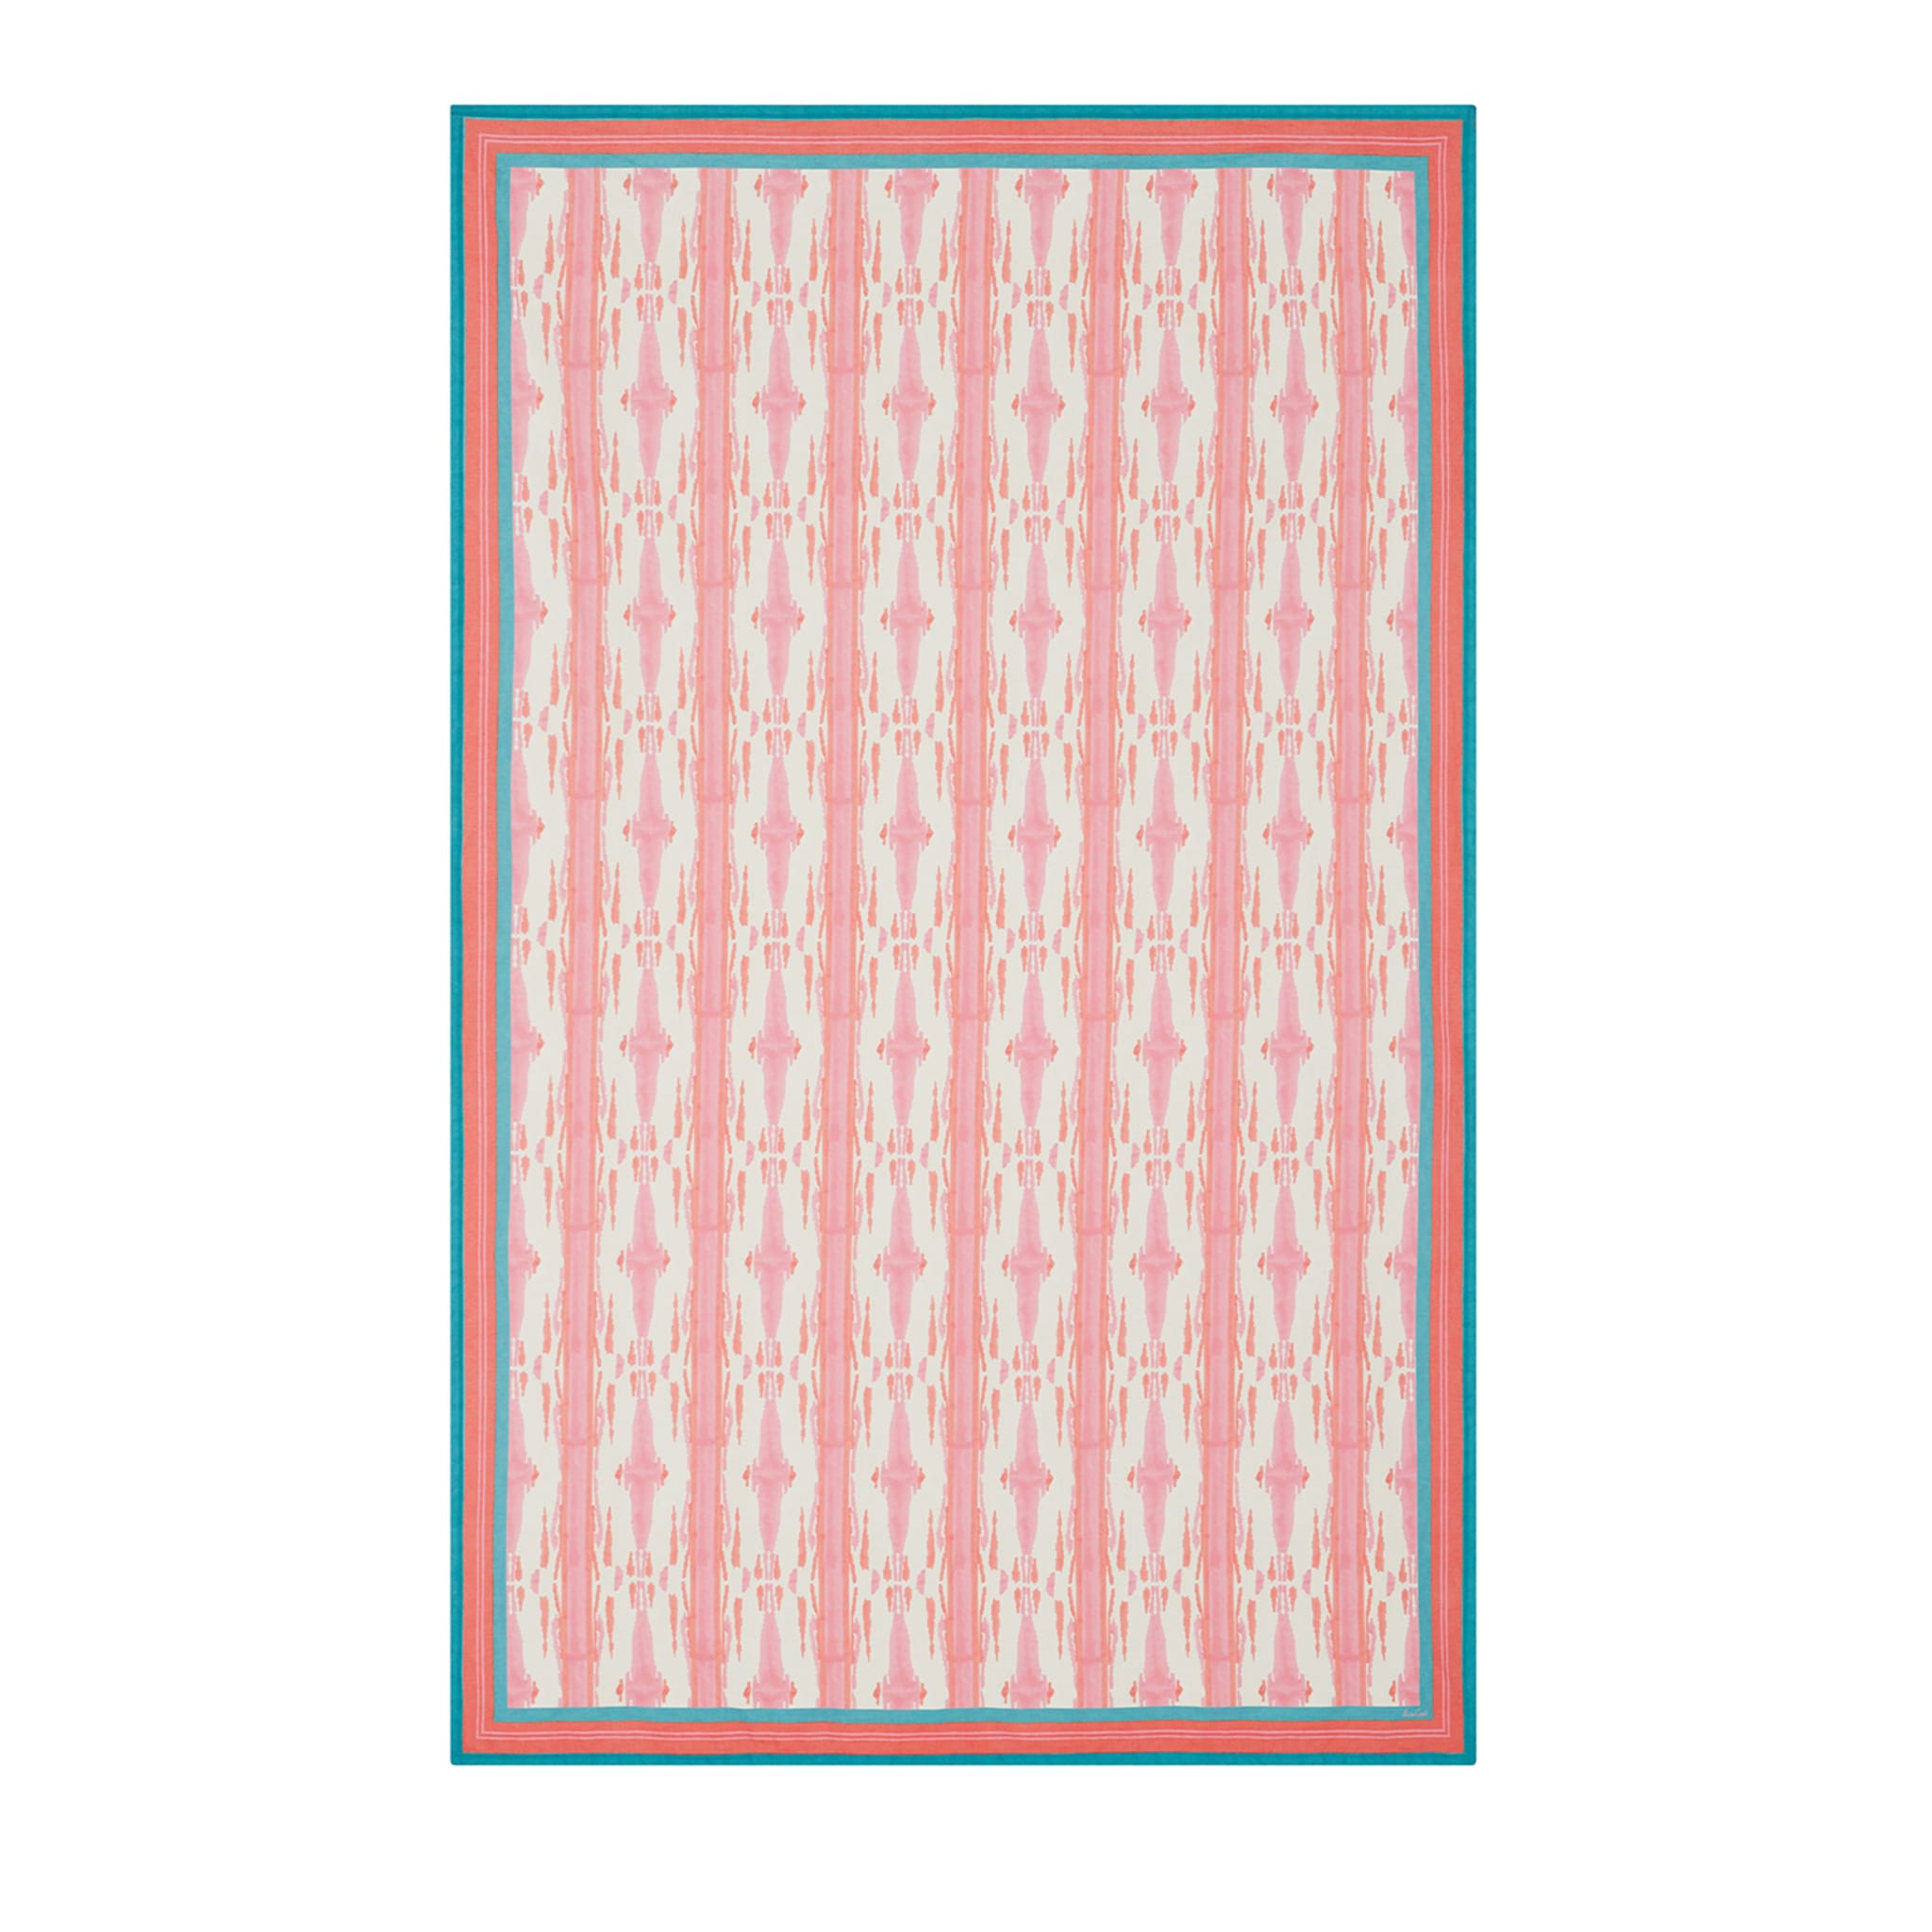 Flame Design Pink Rectangular Tablecloth  - Main view